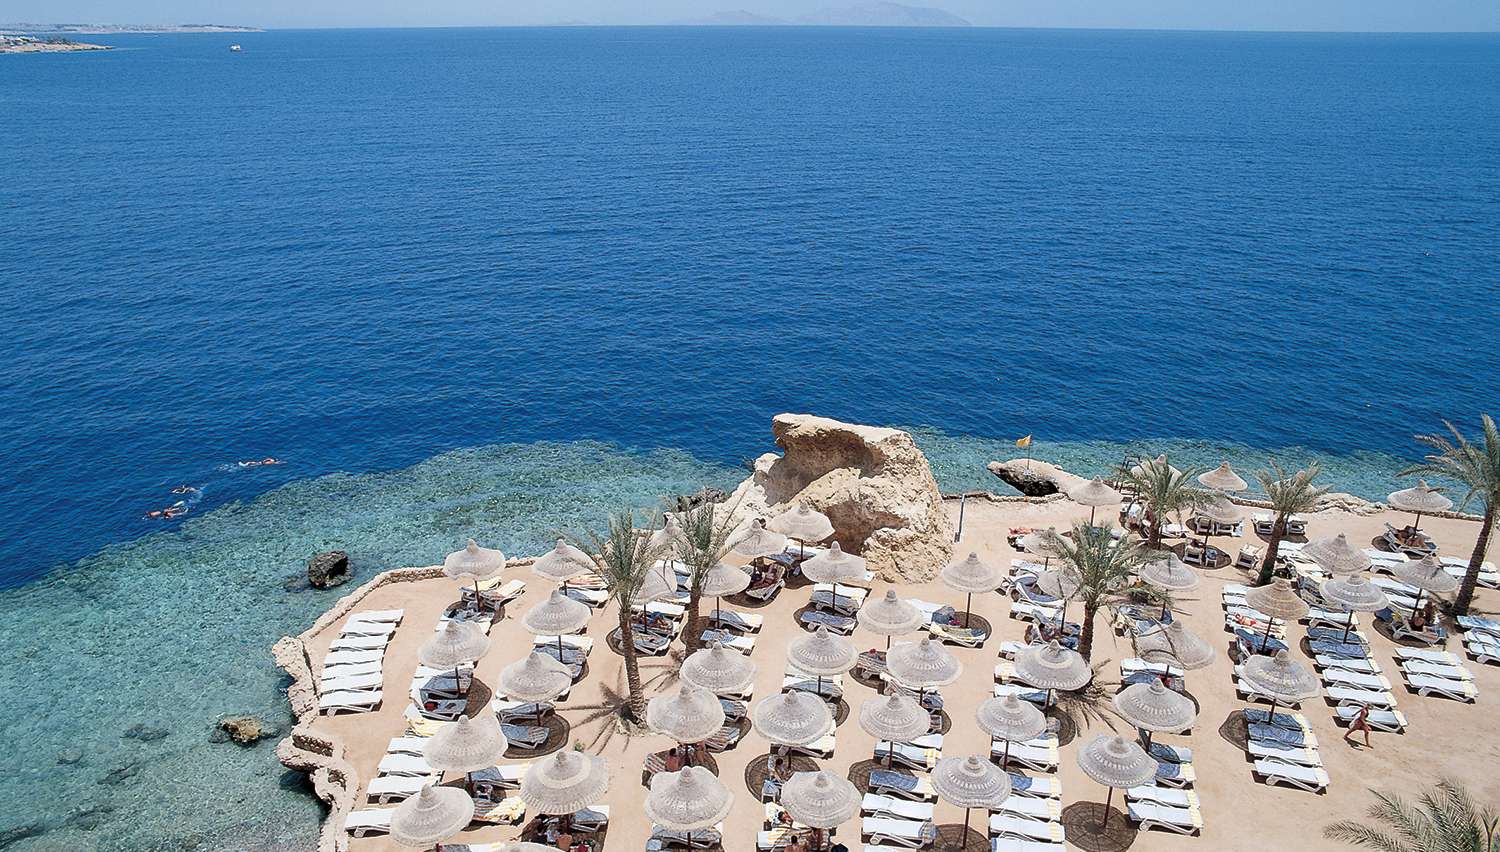 ارخص شركة لحجوزات فندق دريمز بيتش ريزورت شرم الشيخ - شركة رحلتي | Dreams Beach Resort